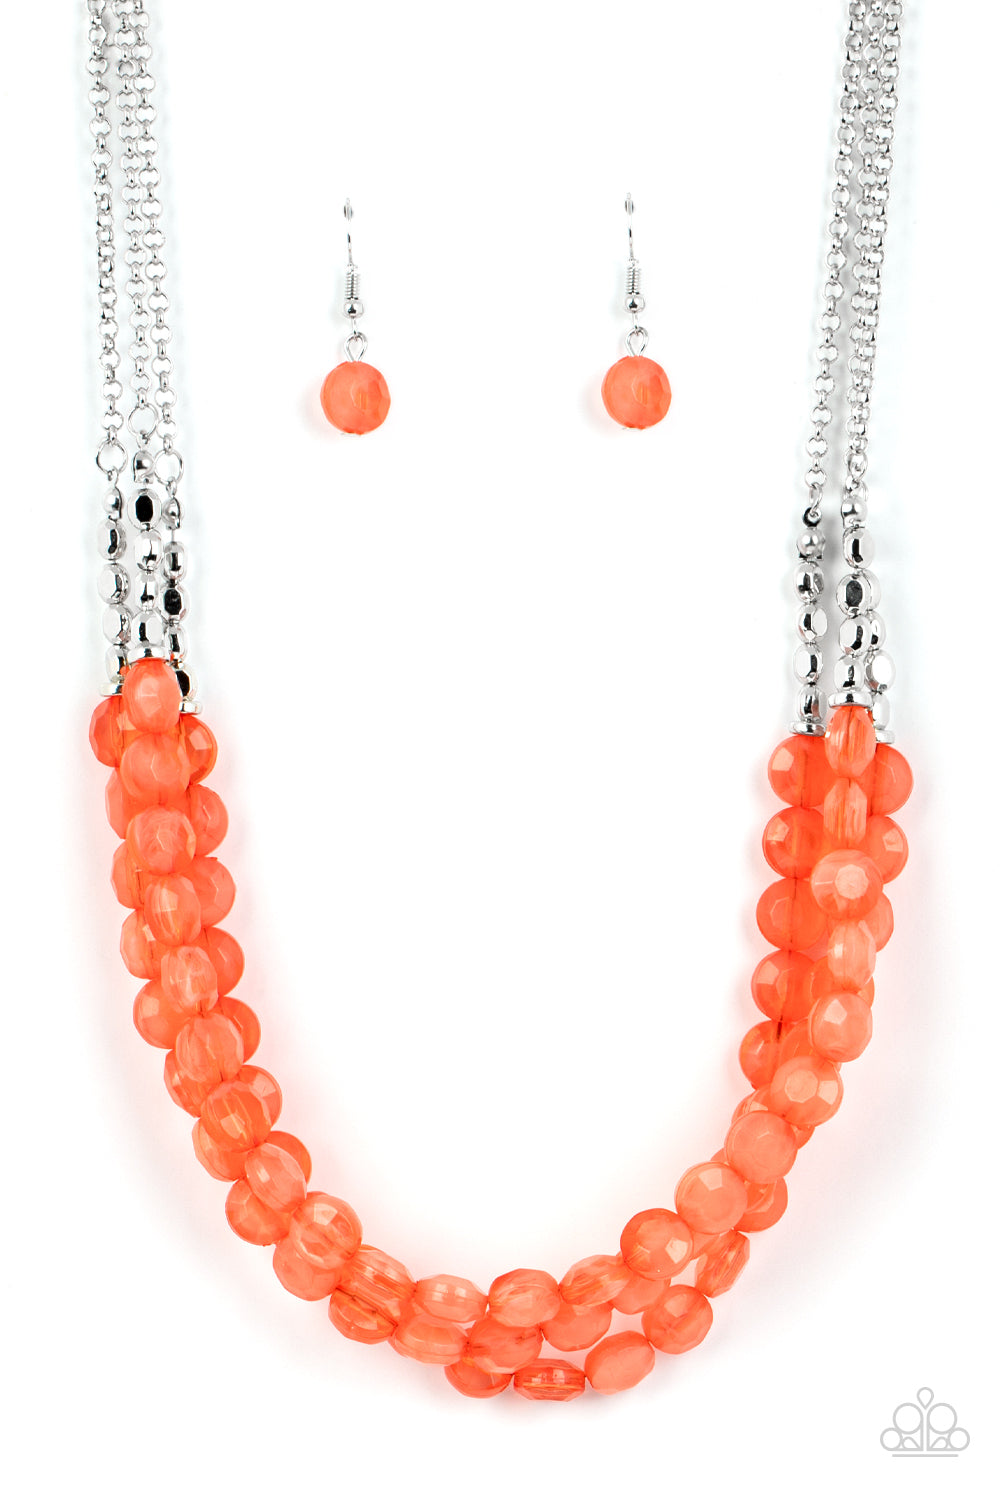 Pacific Picnic Orange Necklace & Bracelet Set - Paparazzi Accessories